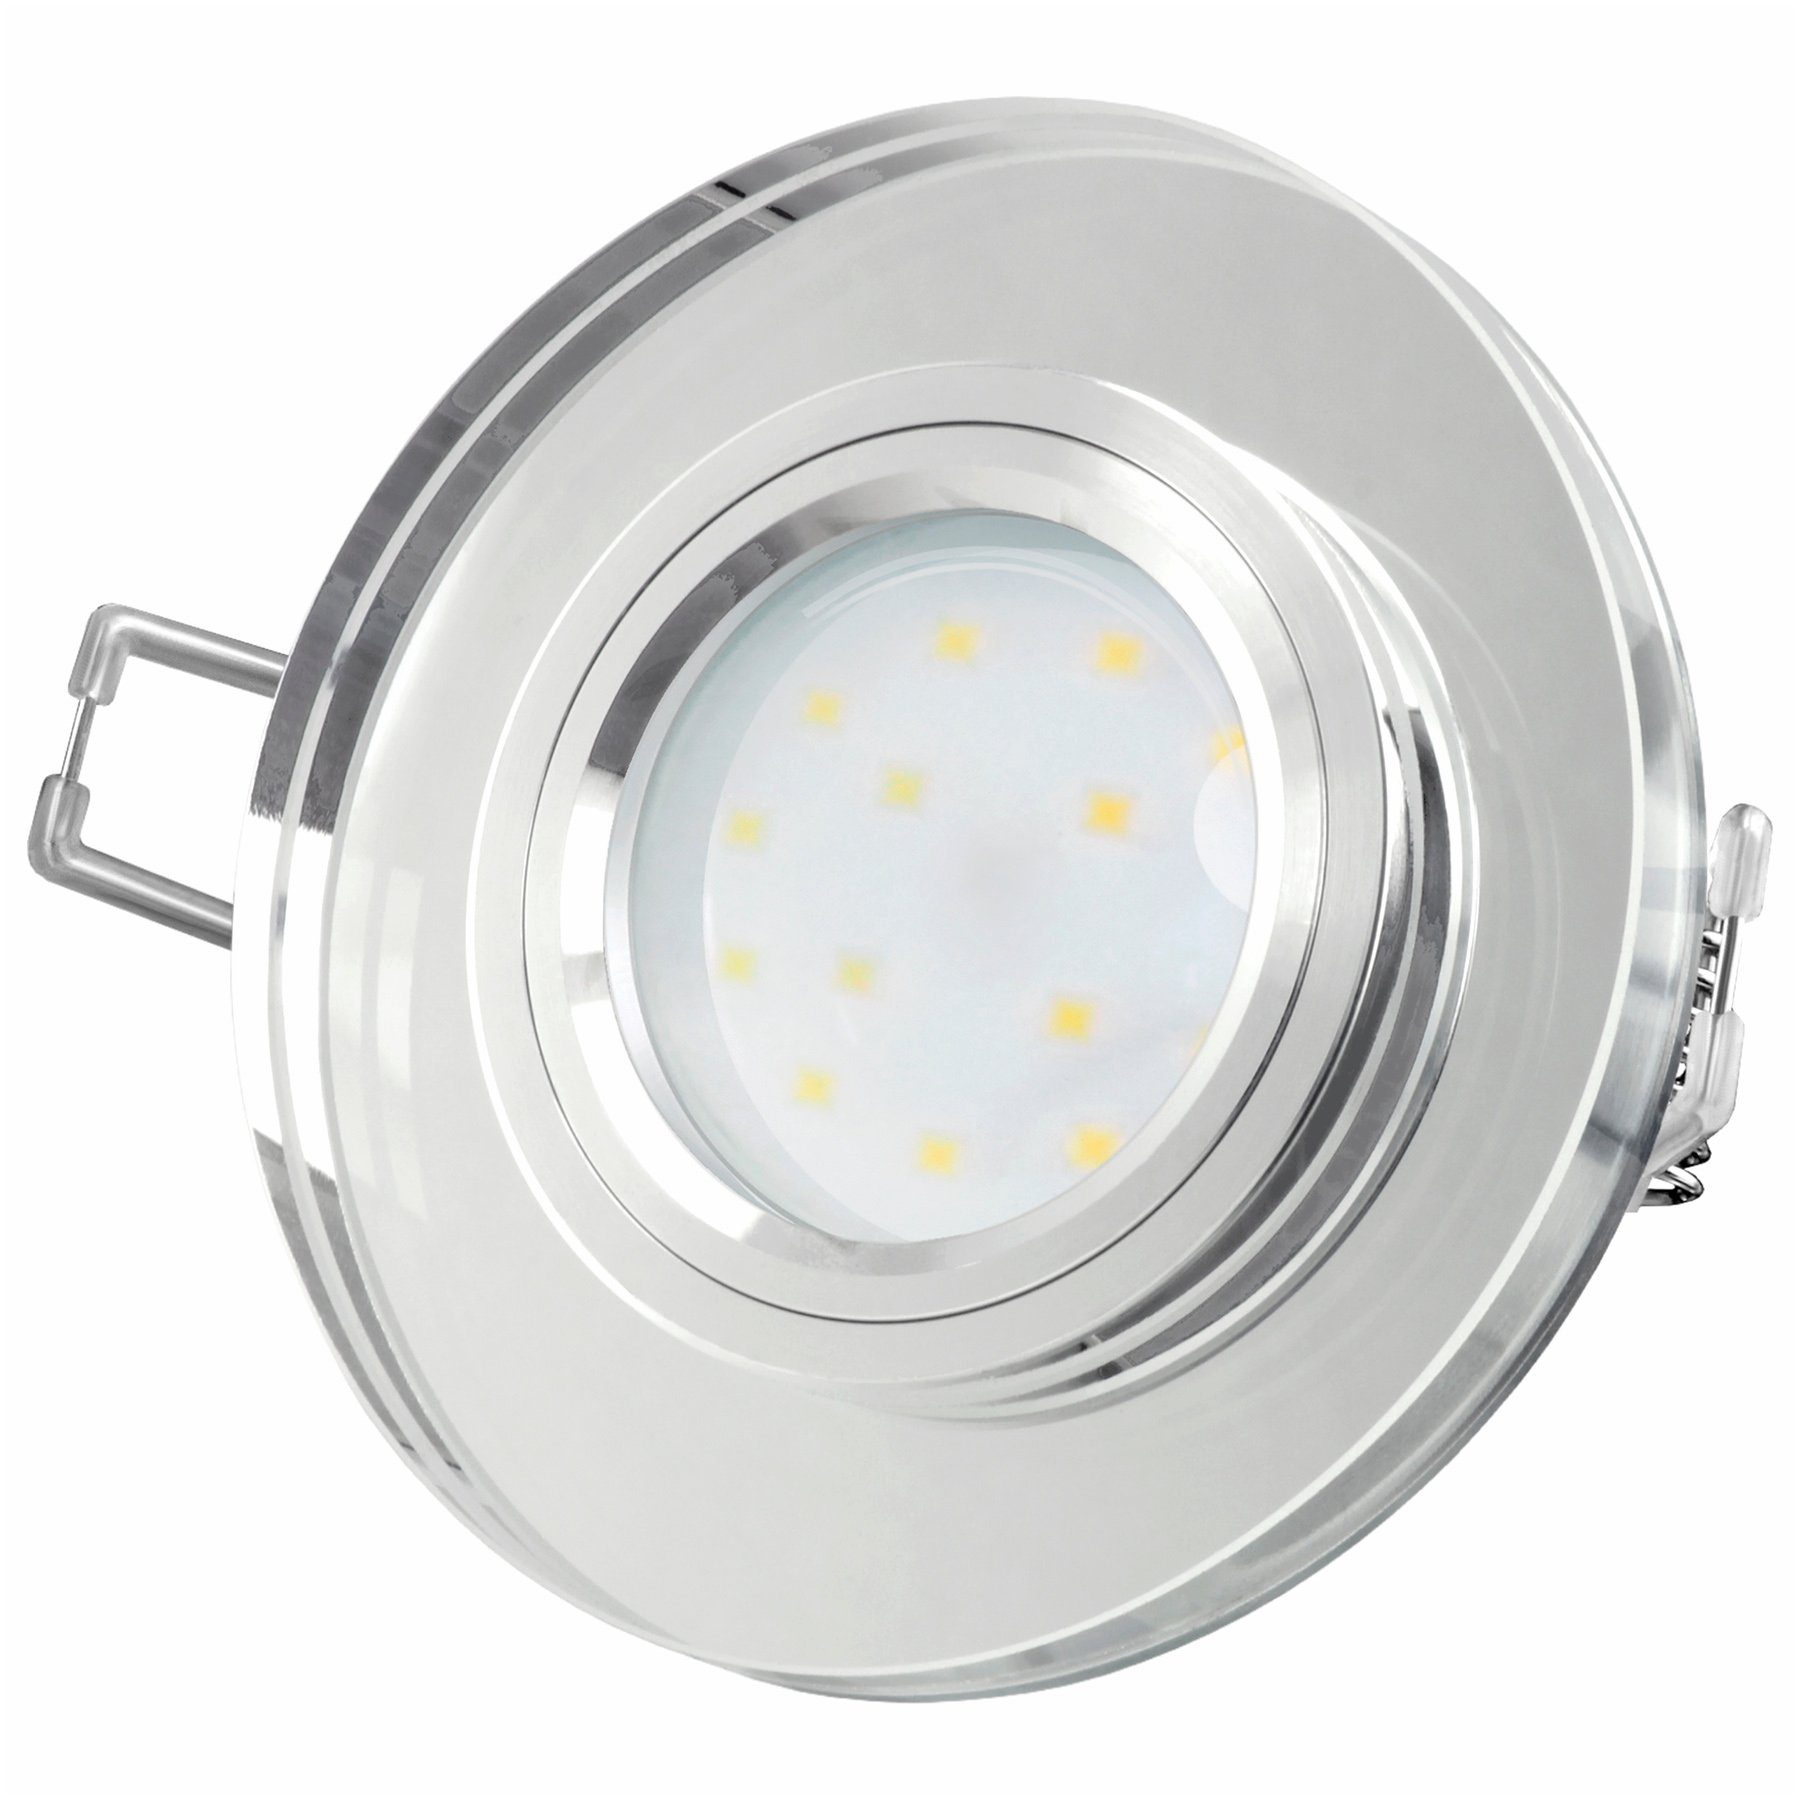 SSC-LUXon LED Einbaustrahler LED-Einbauspot Echtglas flach, rund, klar spiegelnd, fourSTEP Dim LED, Neutralweiß